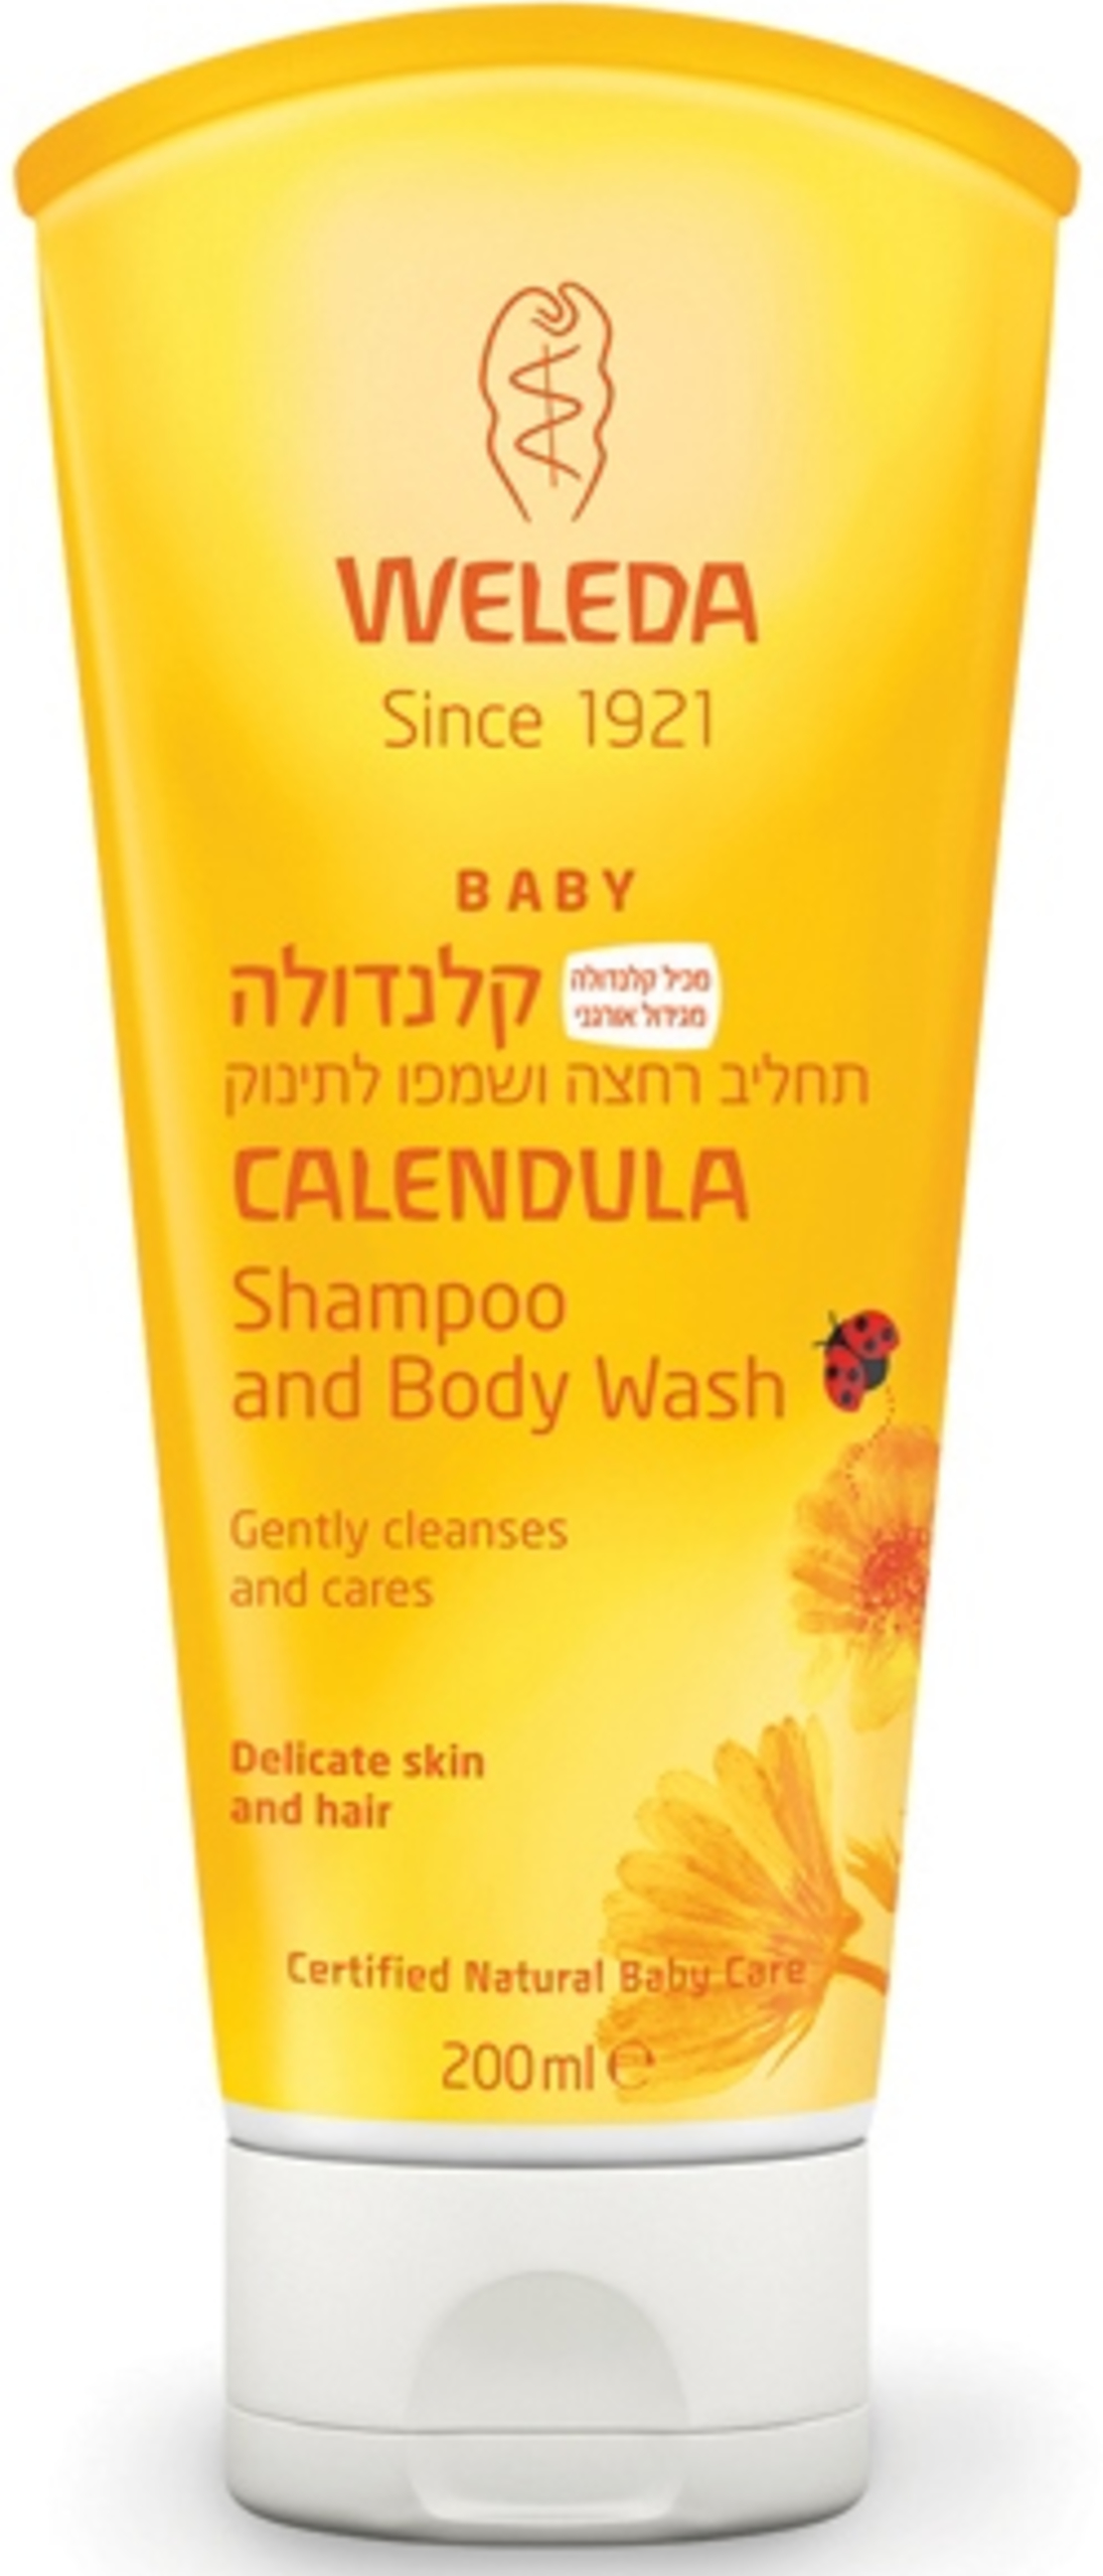 וולדה - תחליב רחצה ושמפו קלנדולה לתינוק Calendula Shampoo and Body Wash